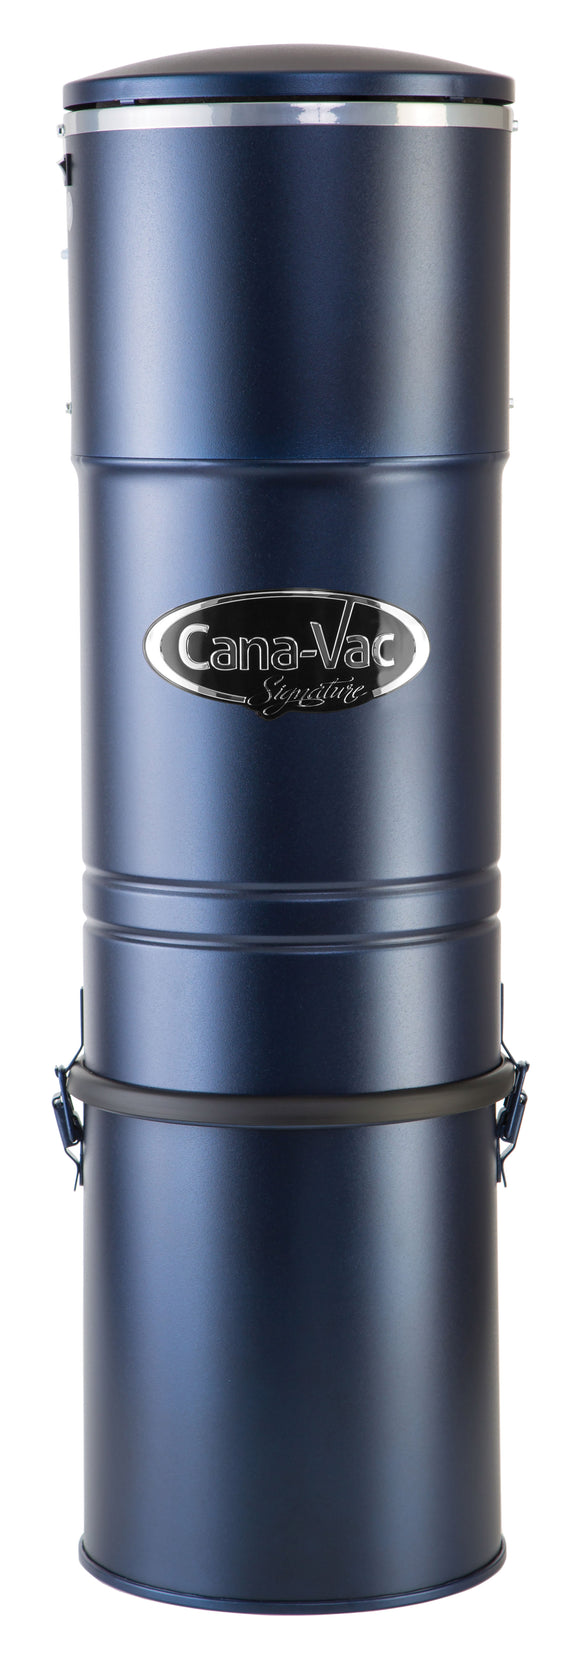 Cana-Vac Signature LS590 Central Vacuum - VacuumStore.com